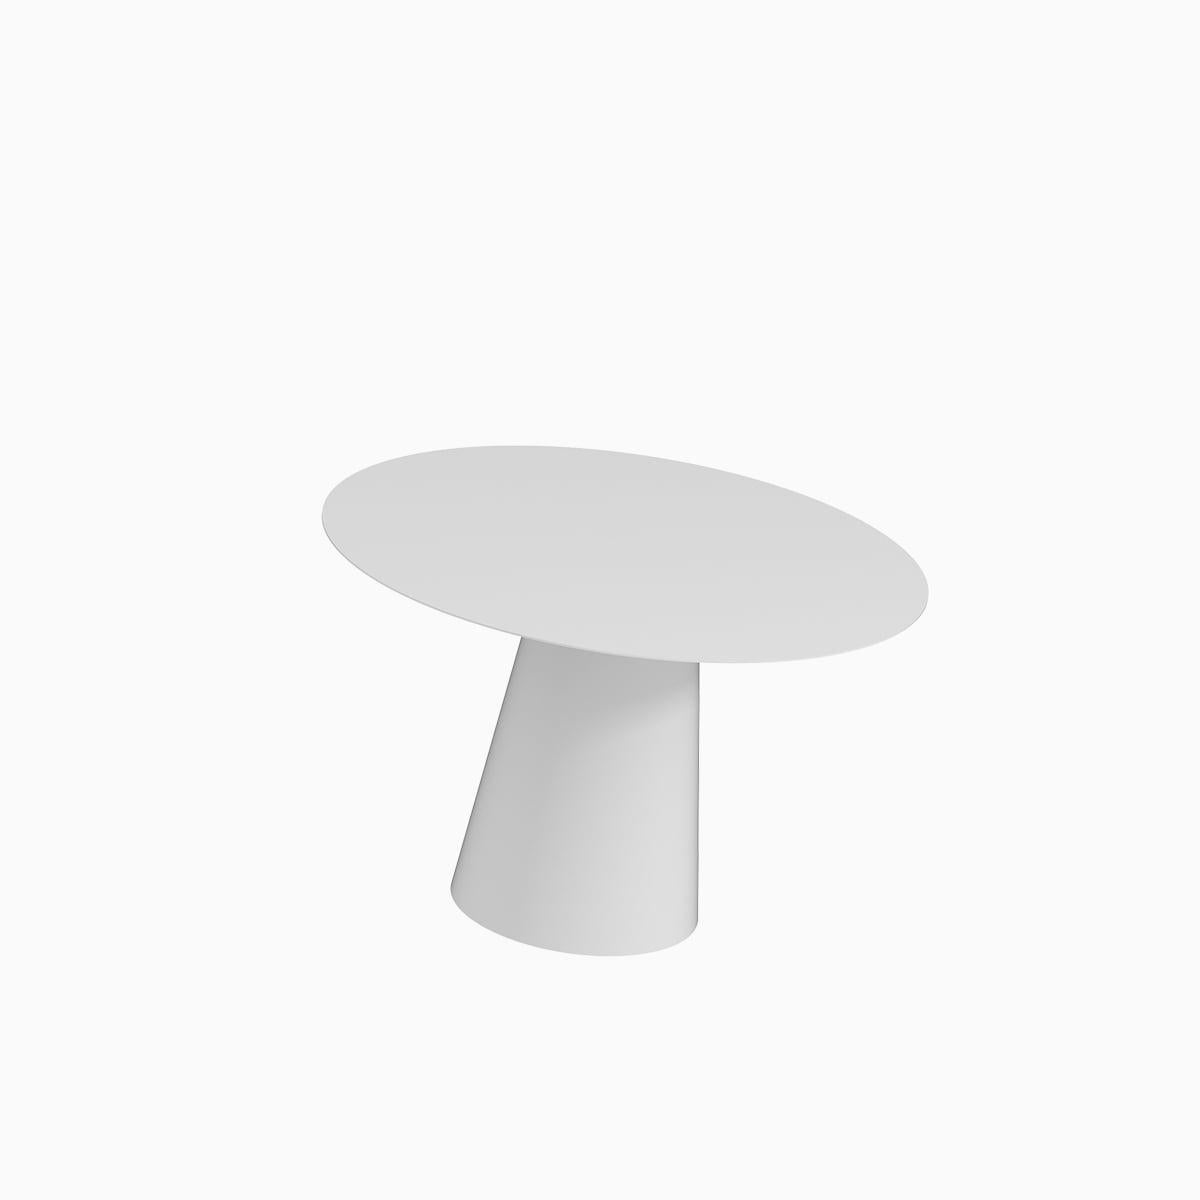 Der Conic Dining Table ist ein monolithisches Stück, das als Esstisch für den Innen- und Außenbereich konzipiert wurde. 
Von Hand aus galvanisiertem Aluminium gefertigt und mit einer matten elektrostatischen Beschichtung versehen, kann sein